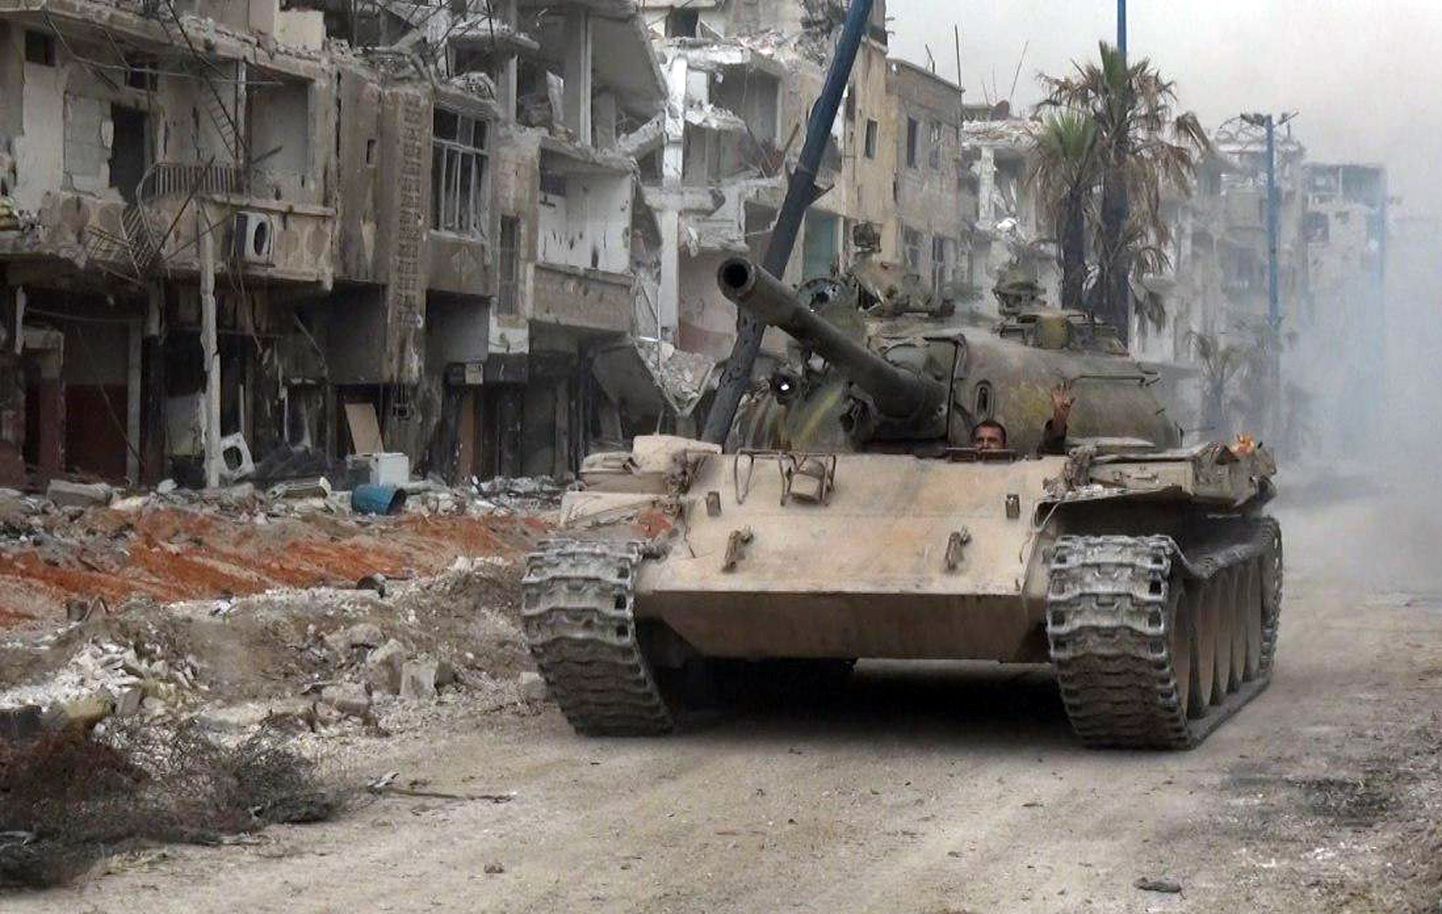 Süüria uudisteagentuuri SANA foto näitamas Süüria armee tanki liikumas al-Hajar al-Aswadi piirkonnas Damaskuse lõunaosas, kus on käimas rünnak ISISe positsioonidel.